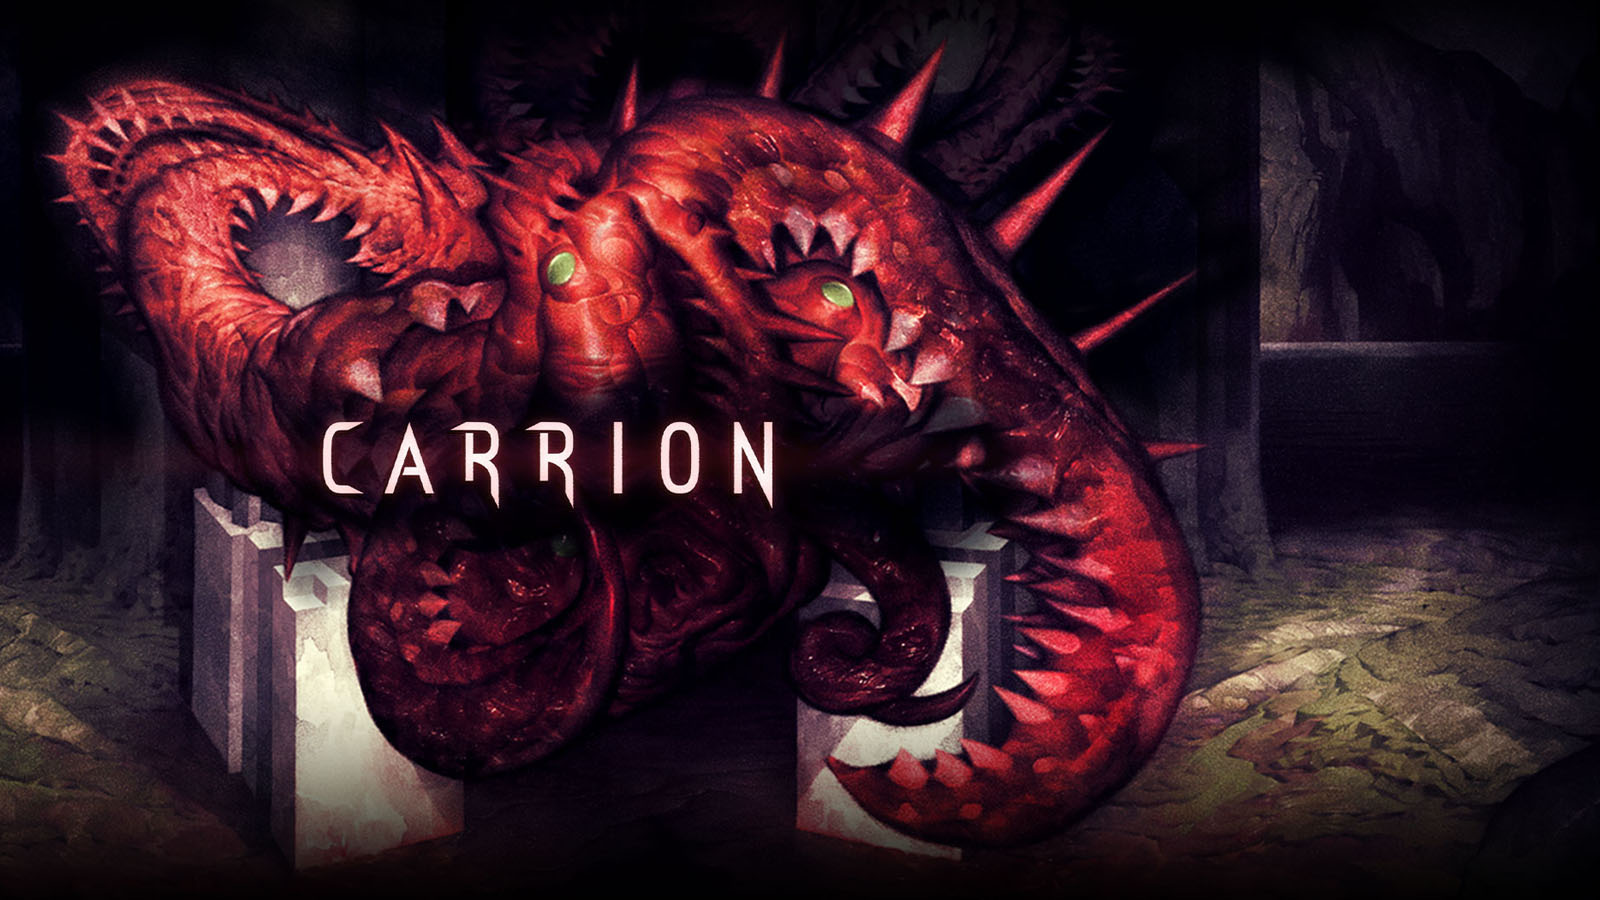 Review Carrion: Tựa game mang màu sắc mới cho thể loại game kinh dị